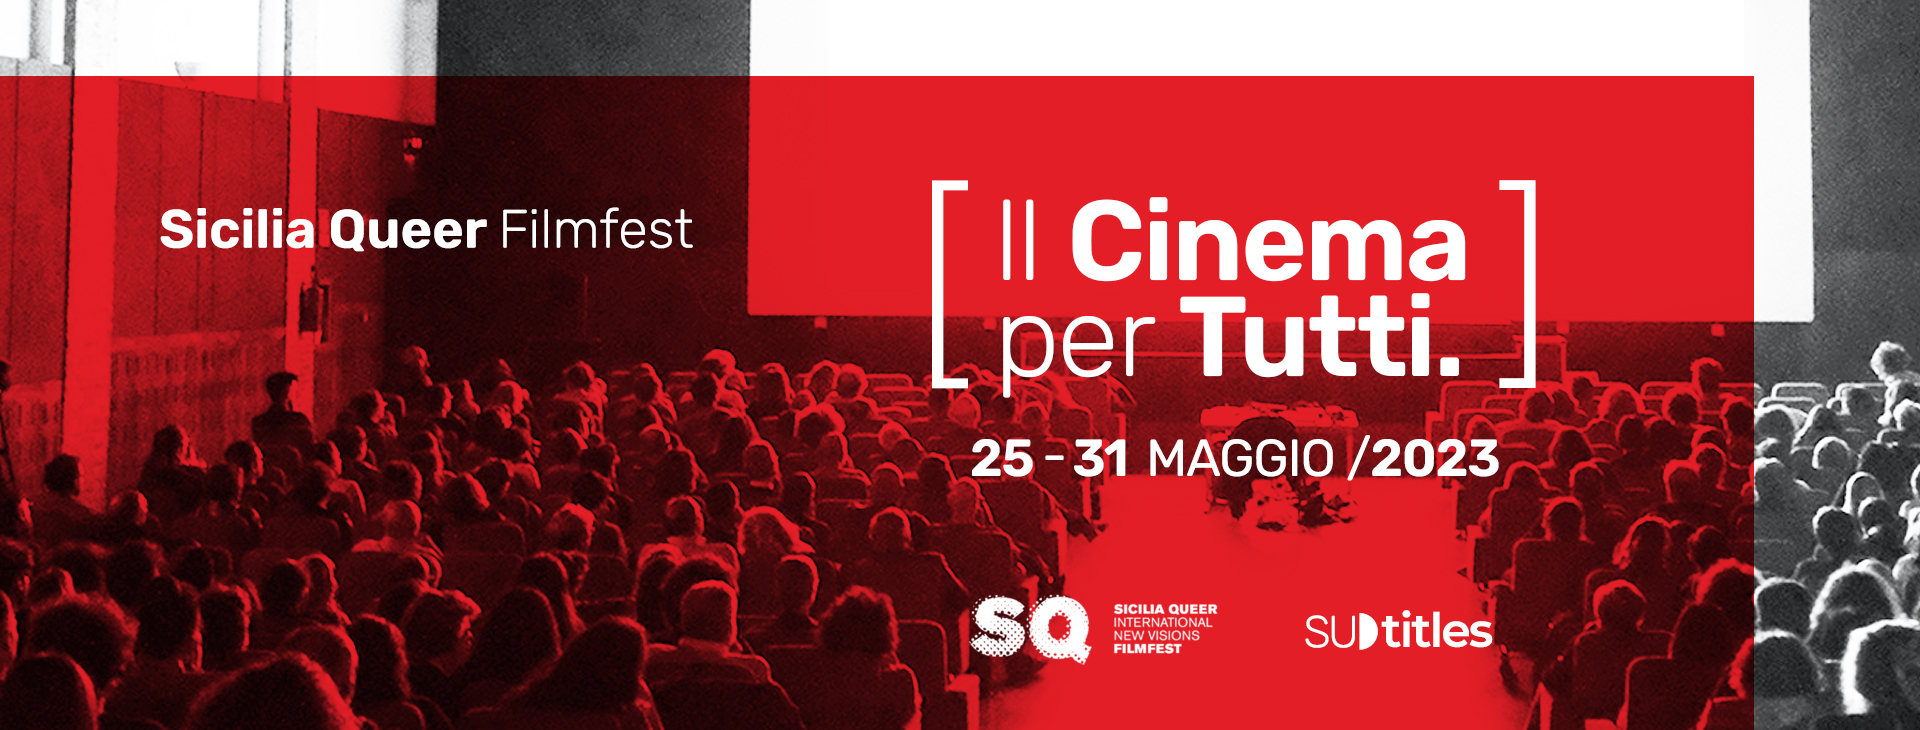 Sicilia Queer filmfest 2023